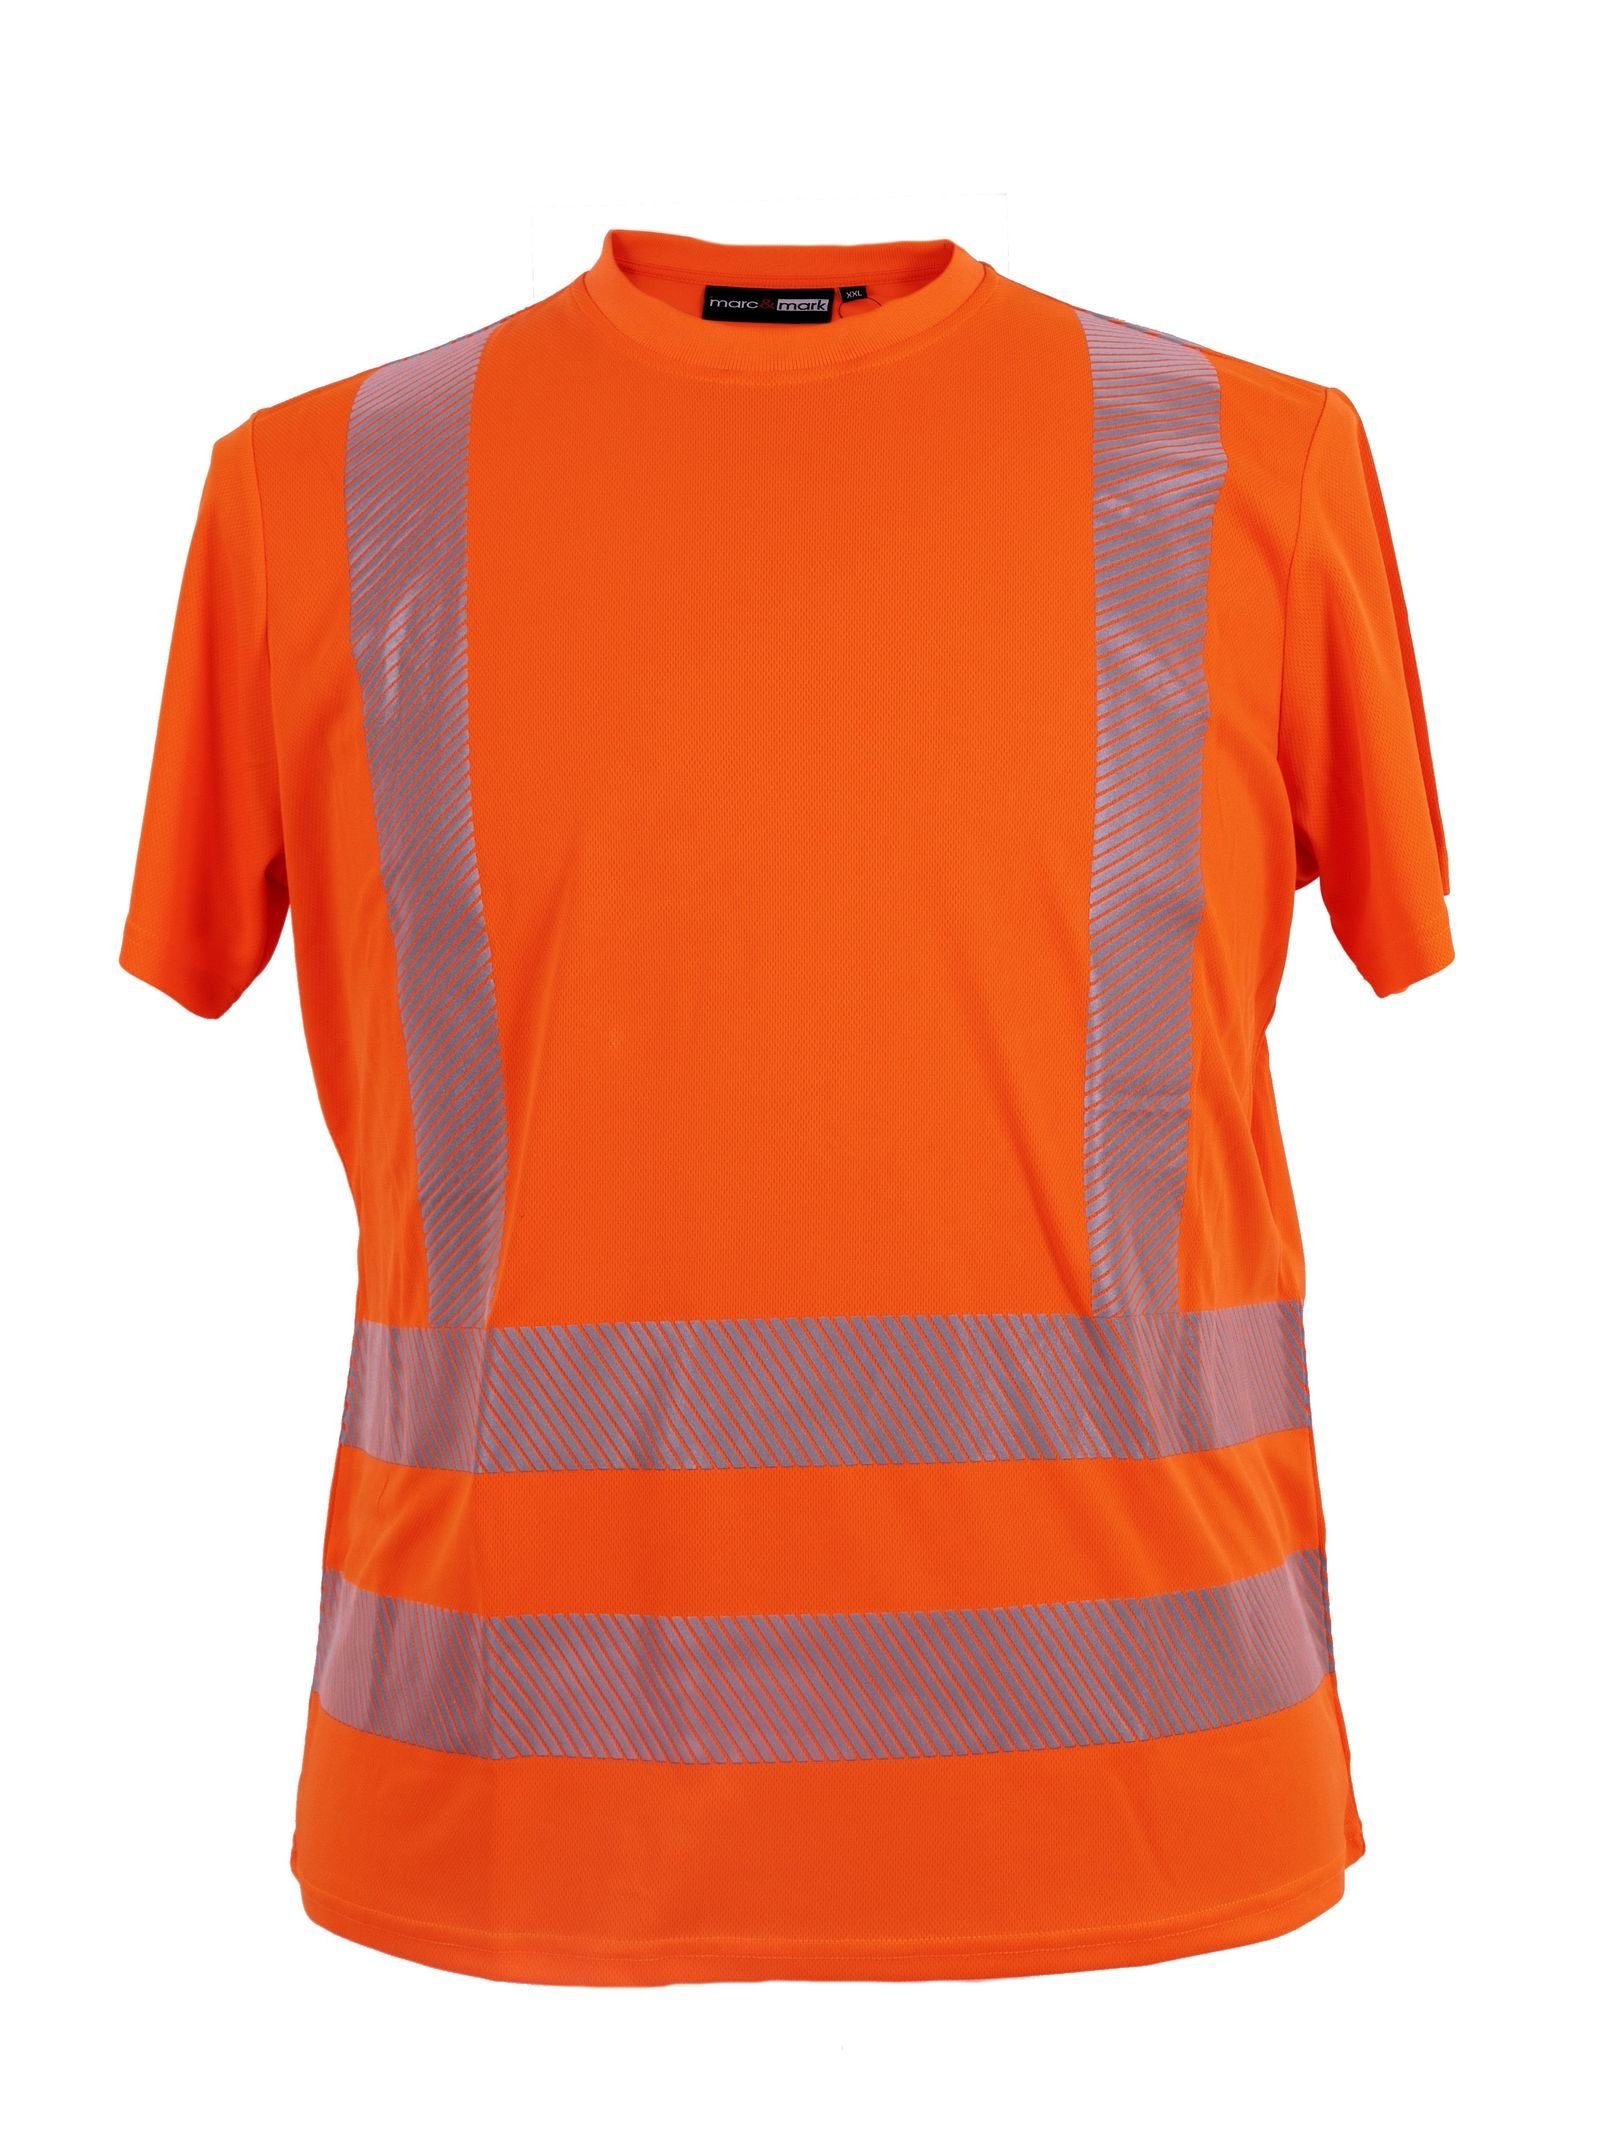 marc & mark T-Shirt Warn T-Shirt von Marc&Mark in großen Größen, orange